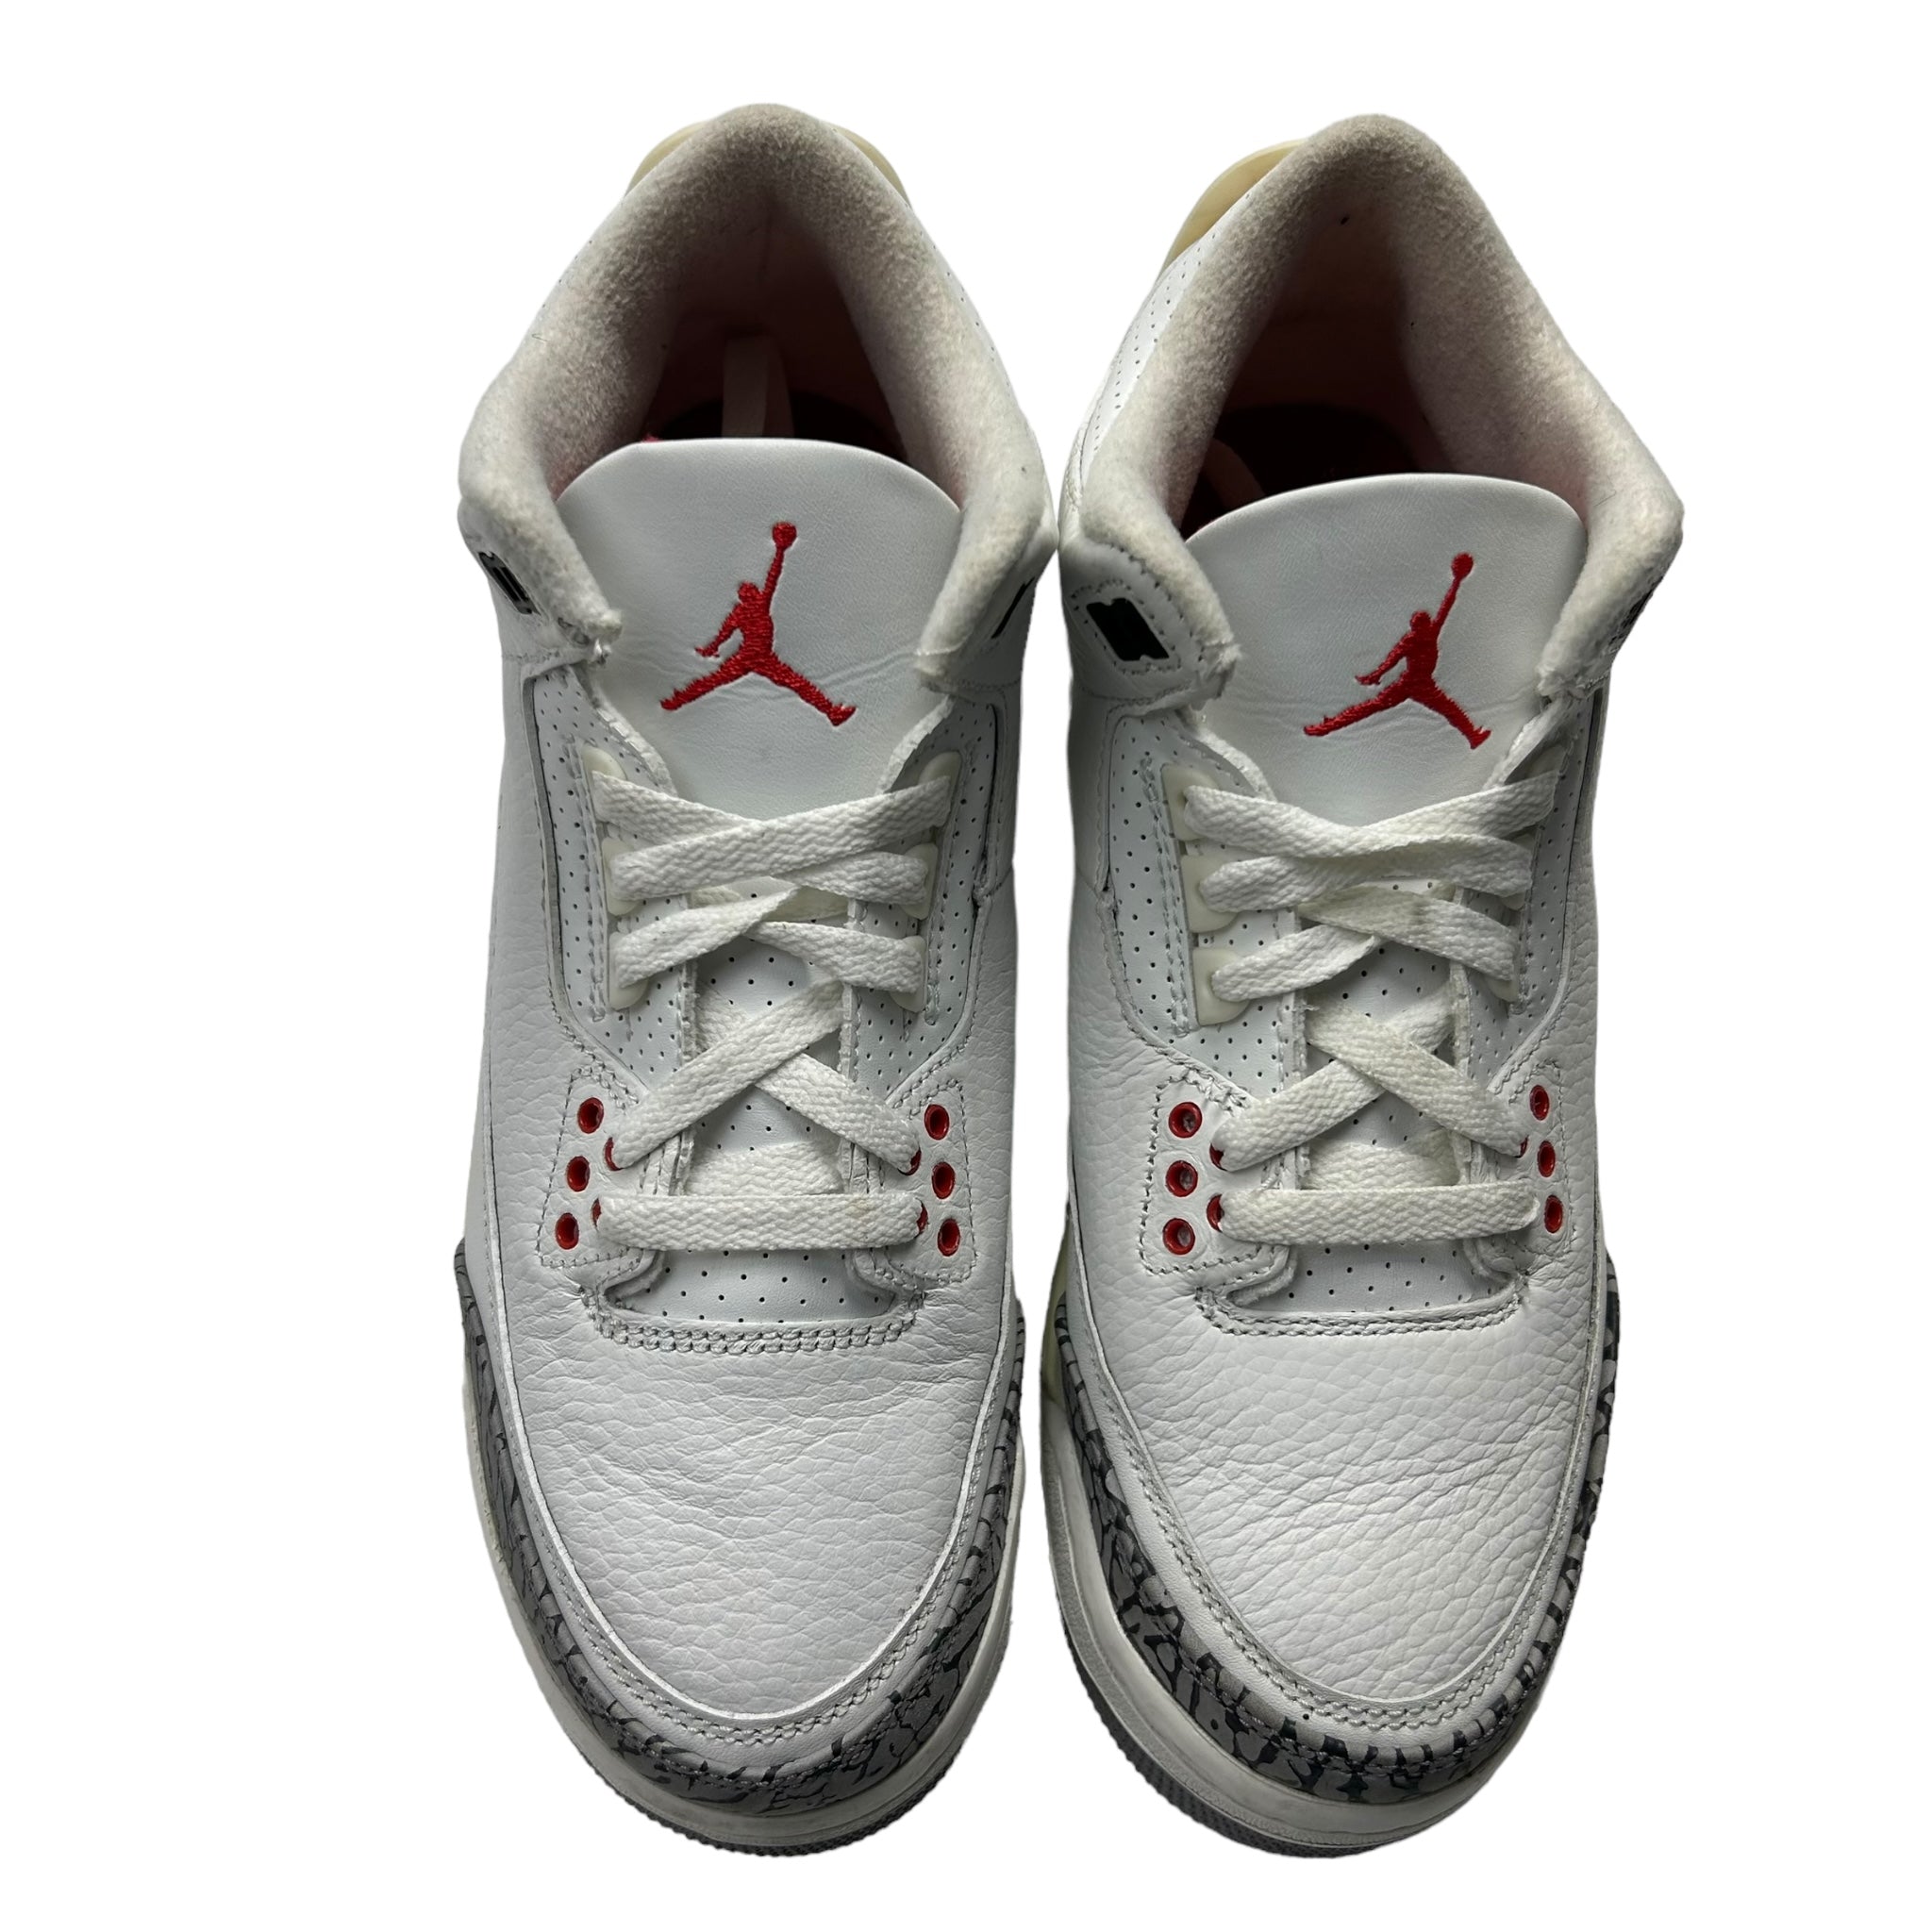 Jordan 3 Retro White Cement Reimagined (Used)